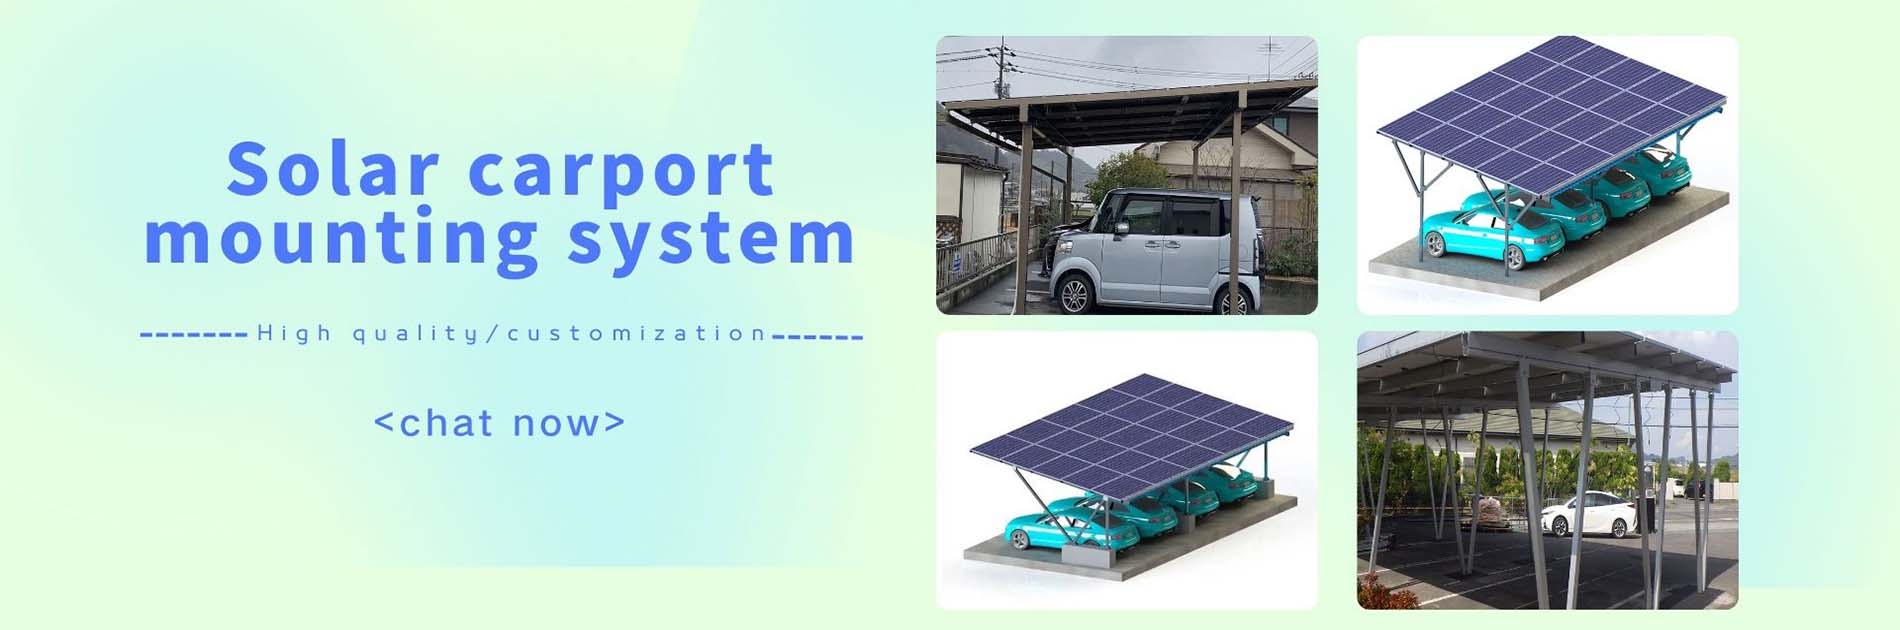 sistema de montaje solar para cochera1